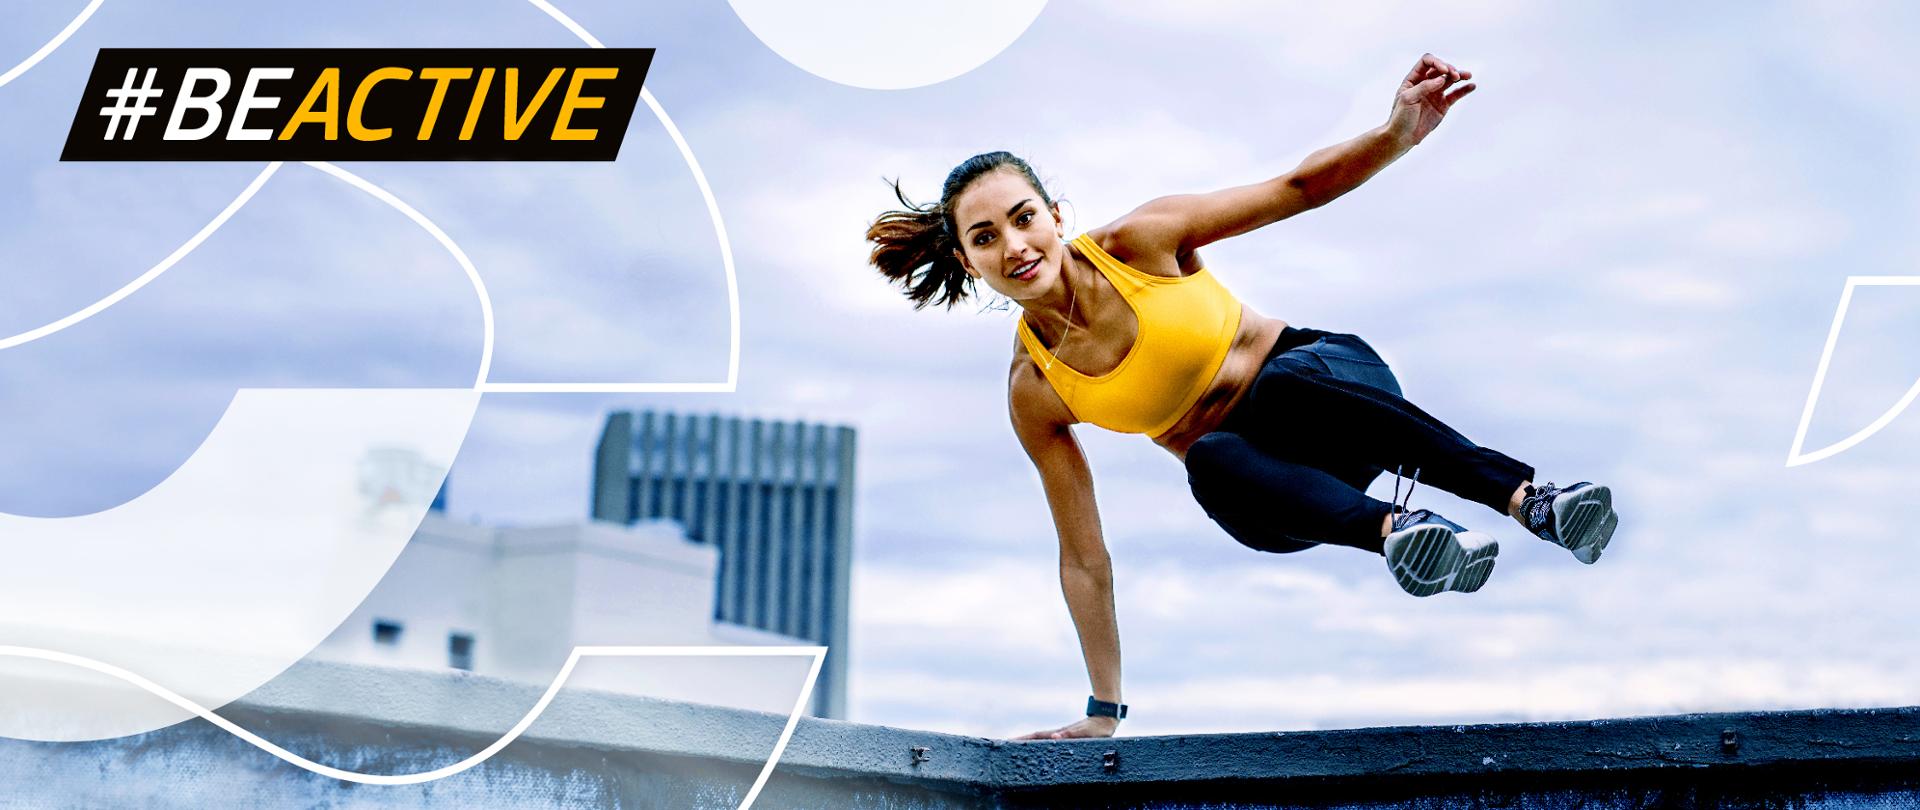 Grafika ze skaczącą kobietą w żółtym topie i napis Be Active